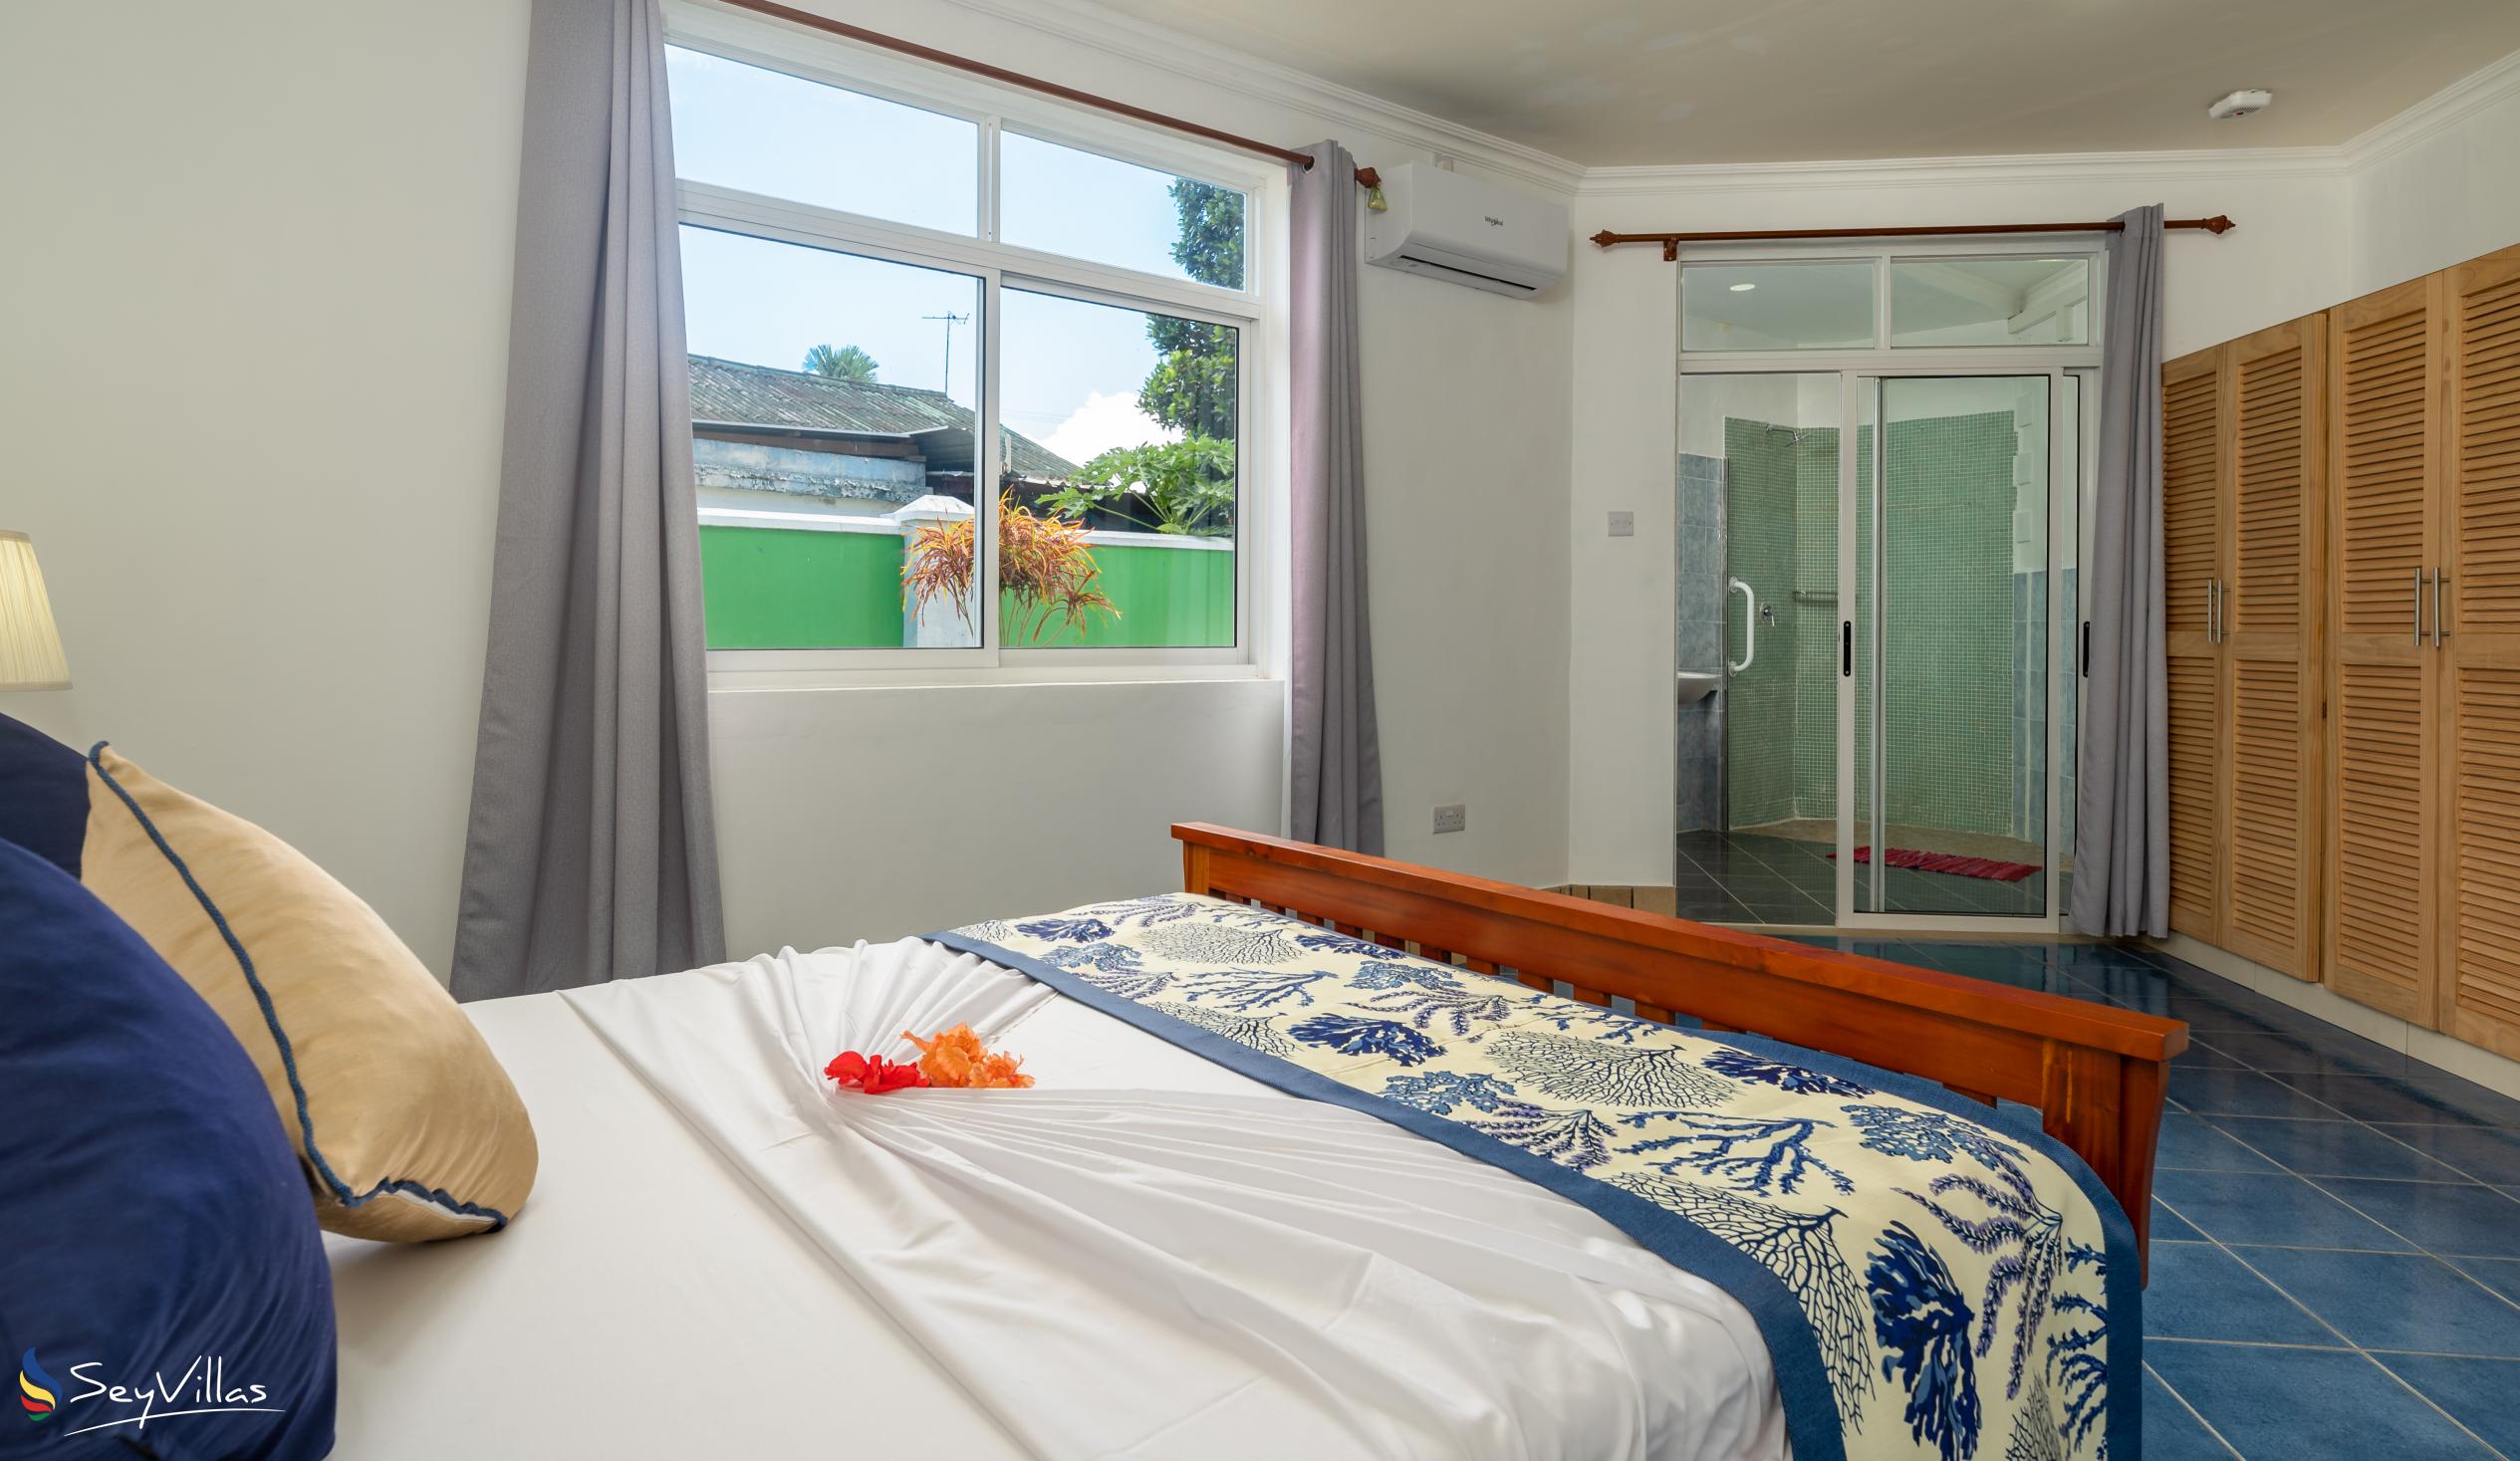 Foto 52: 340 Degrees Mountain View Apartments - Appartement avec vue sur le jardin - 2 Chambres - Mahé (Seychelles)